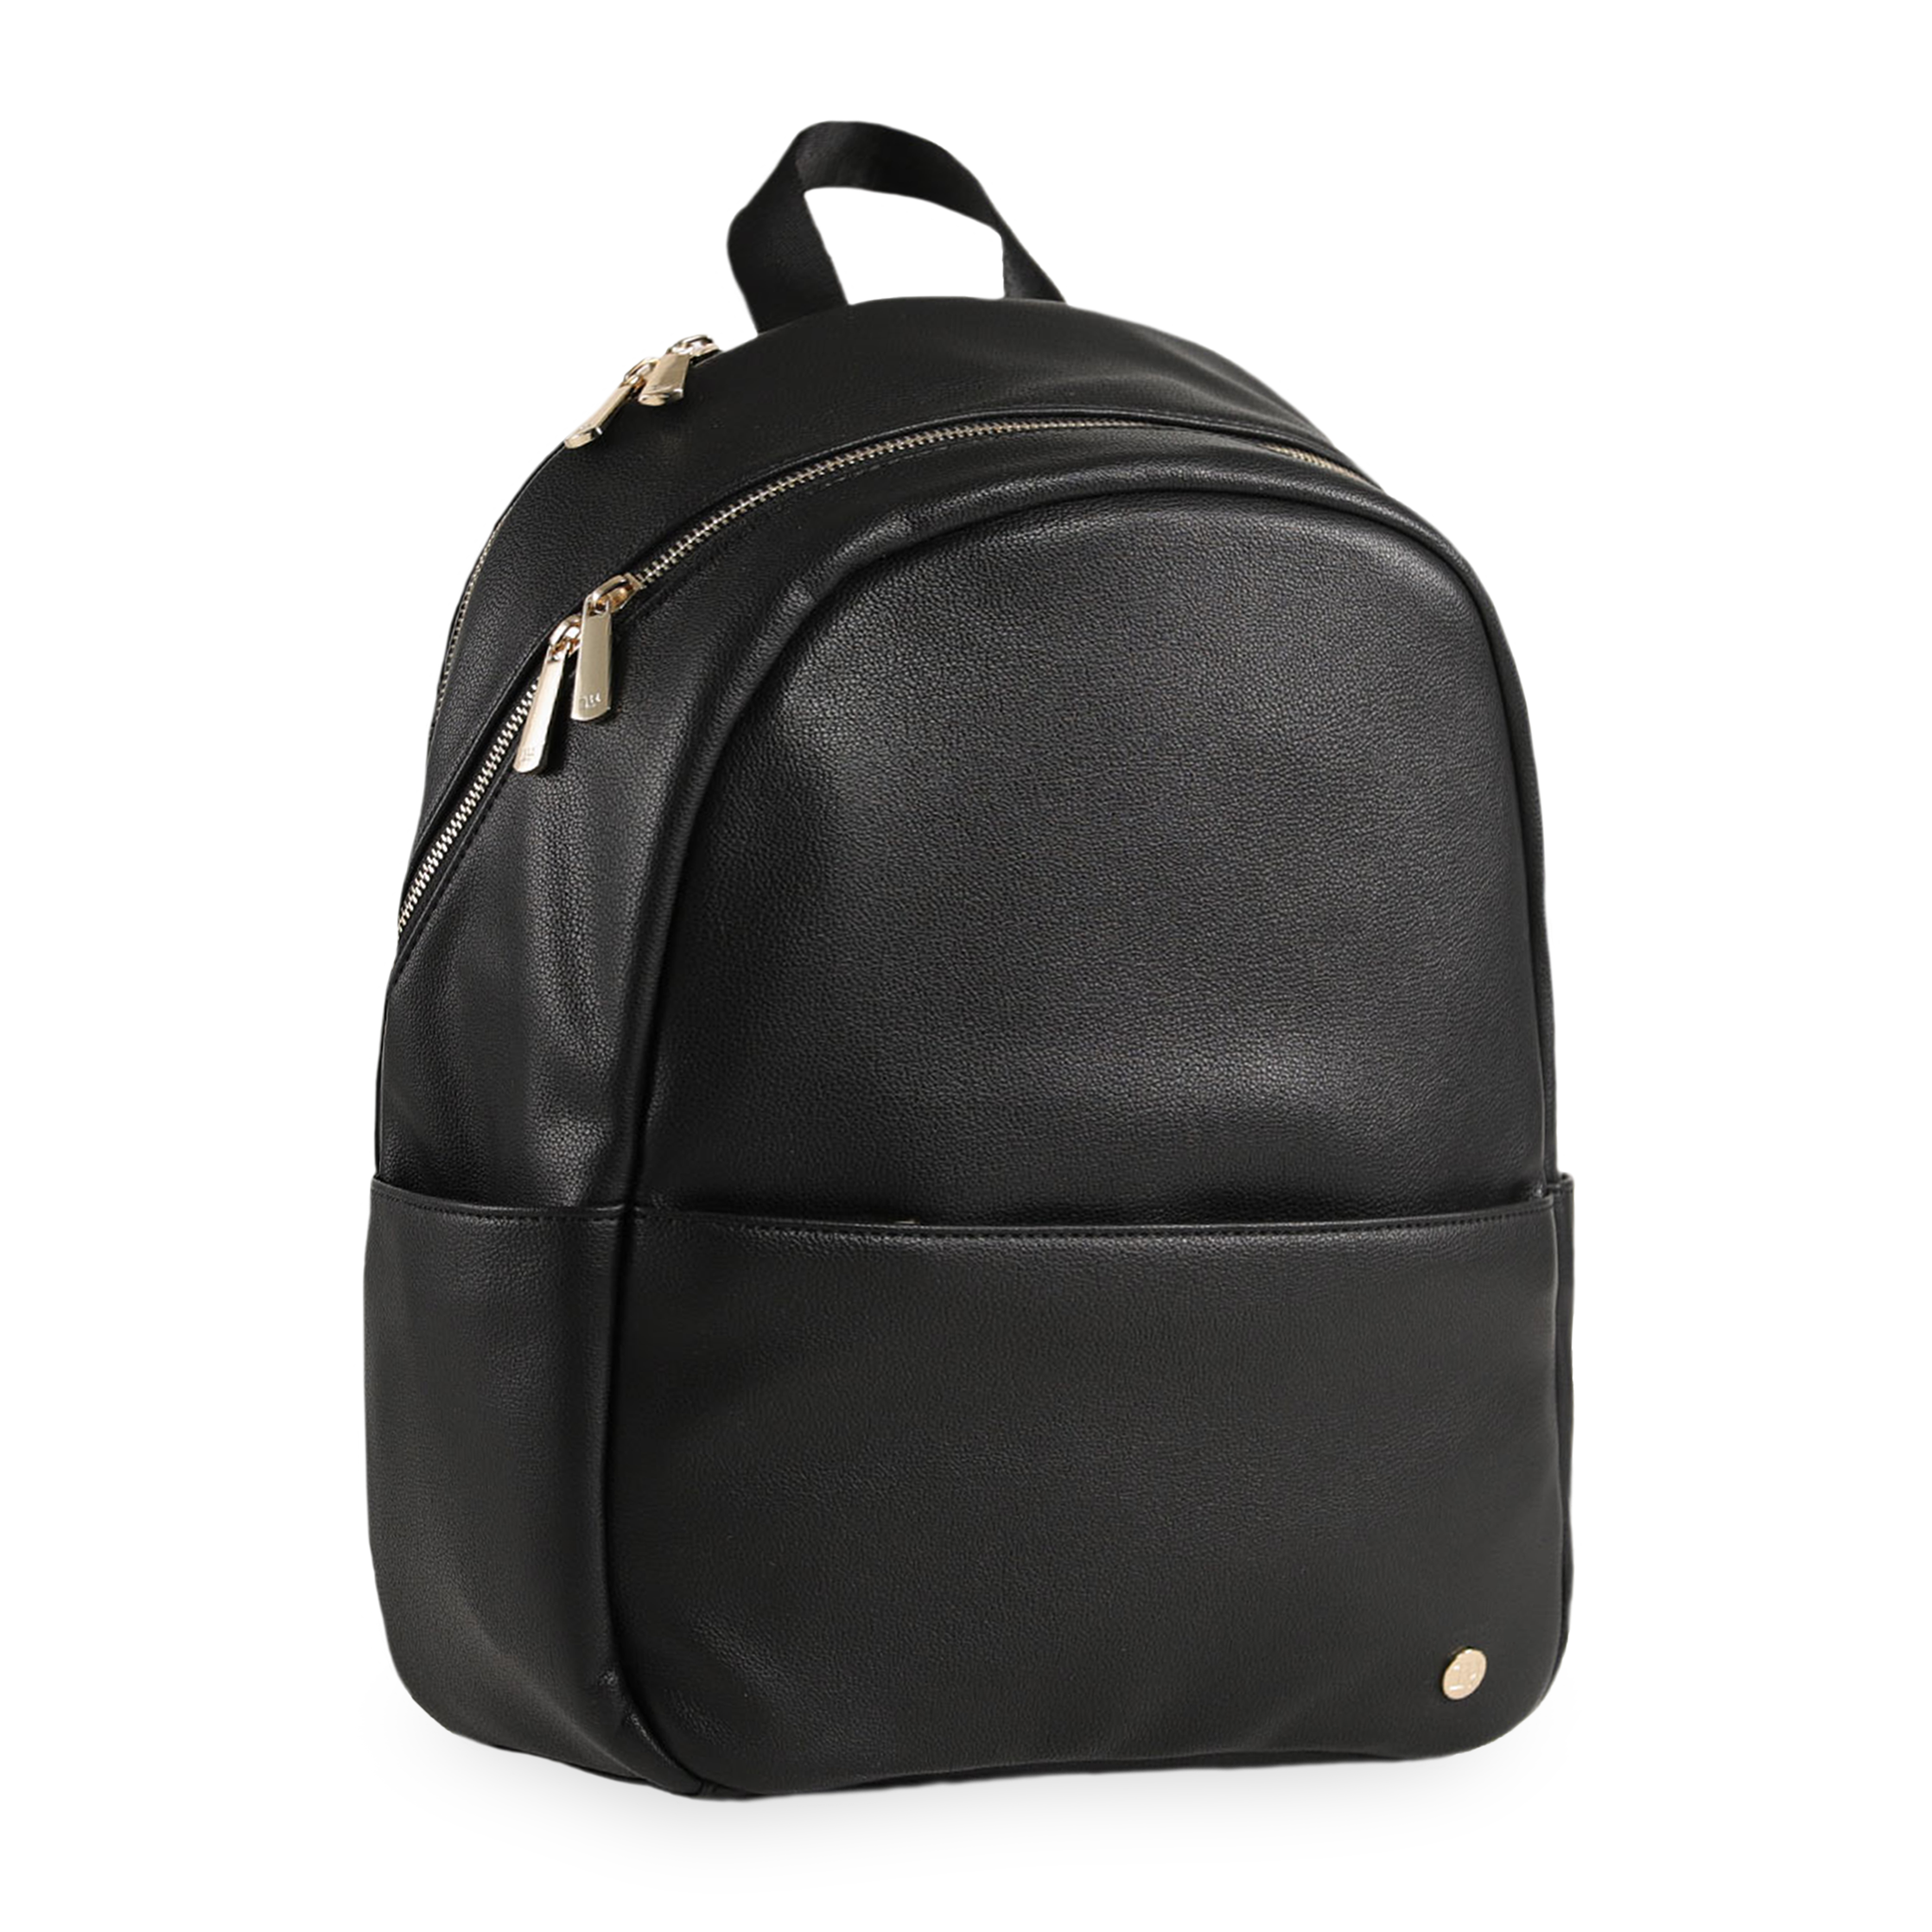 Skyline Backpack Black - Gold Hardware